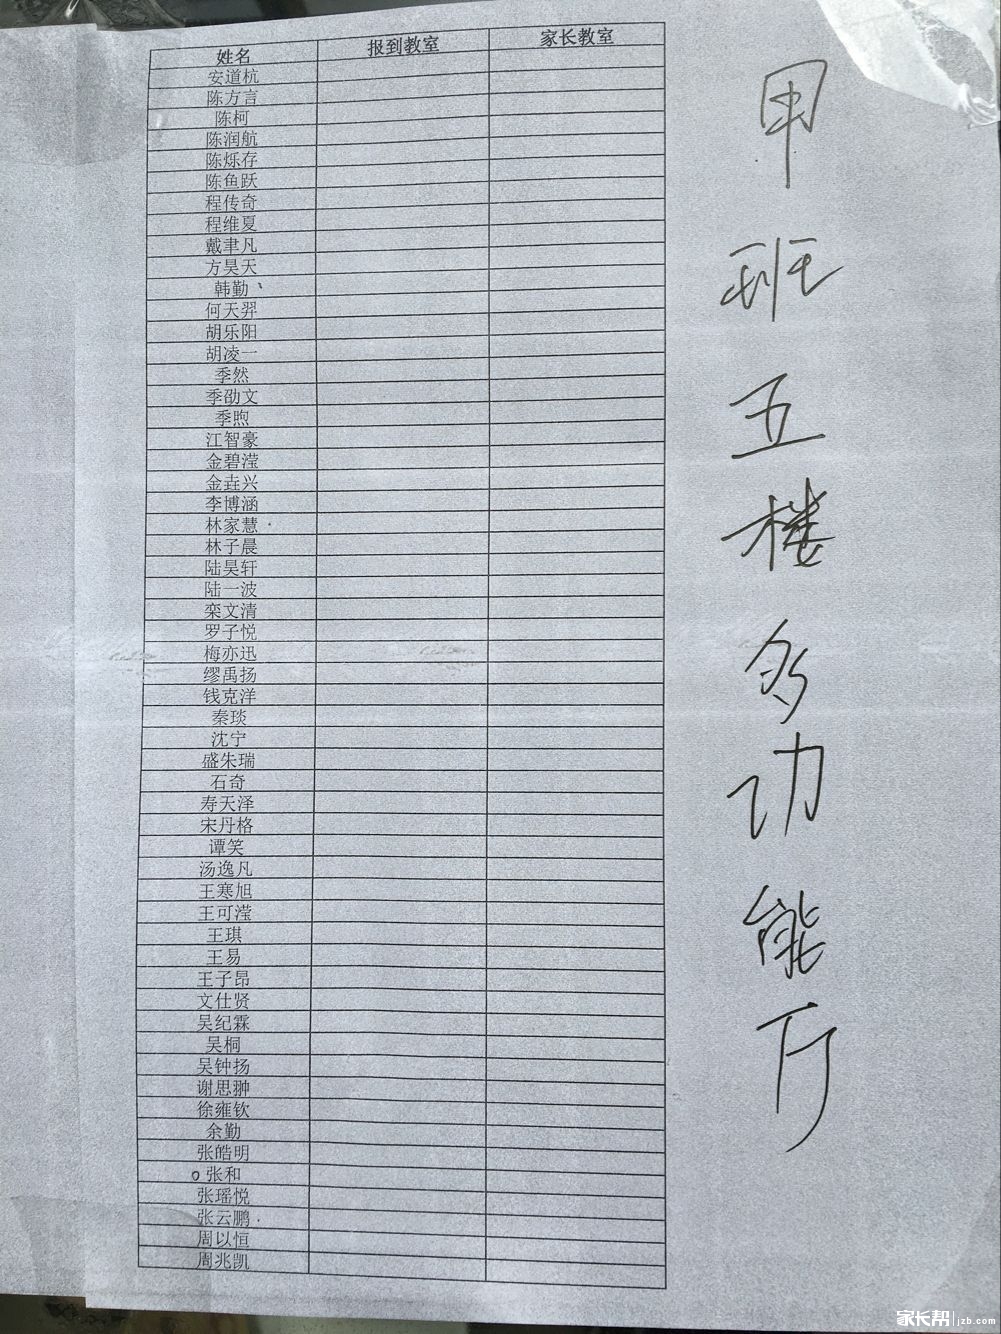 2016年杭州高级中学实验班分班名单1